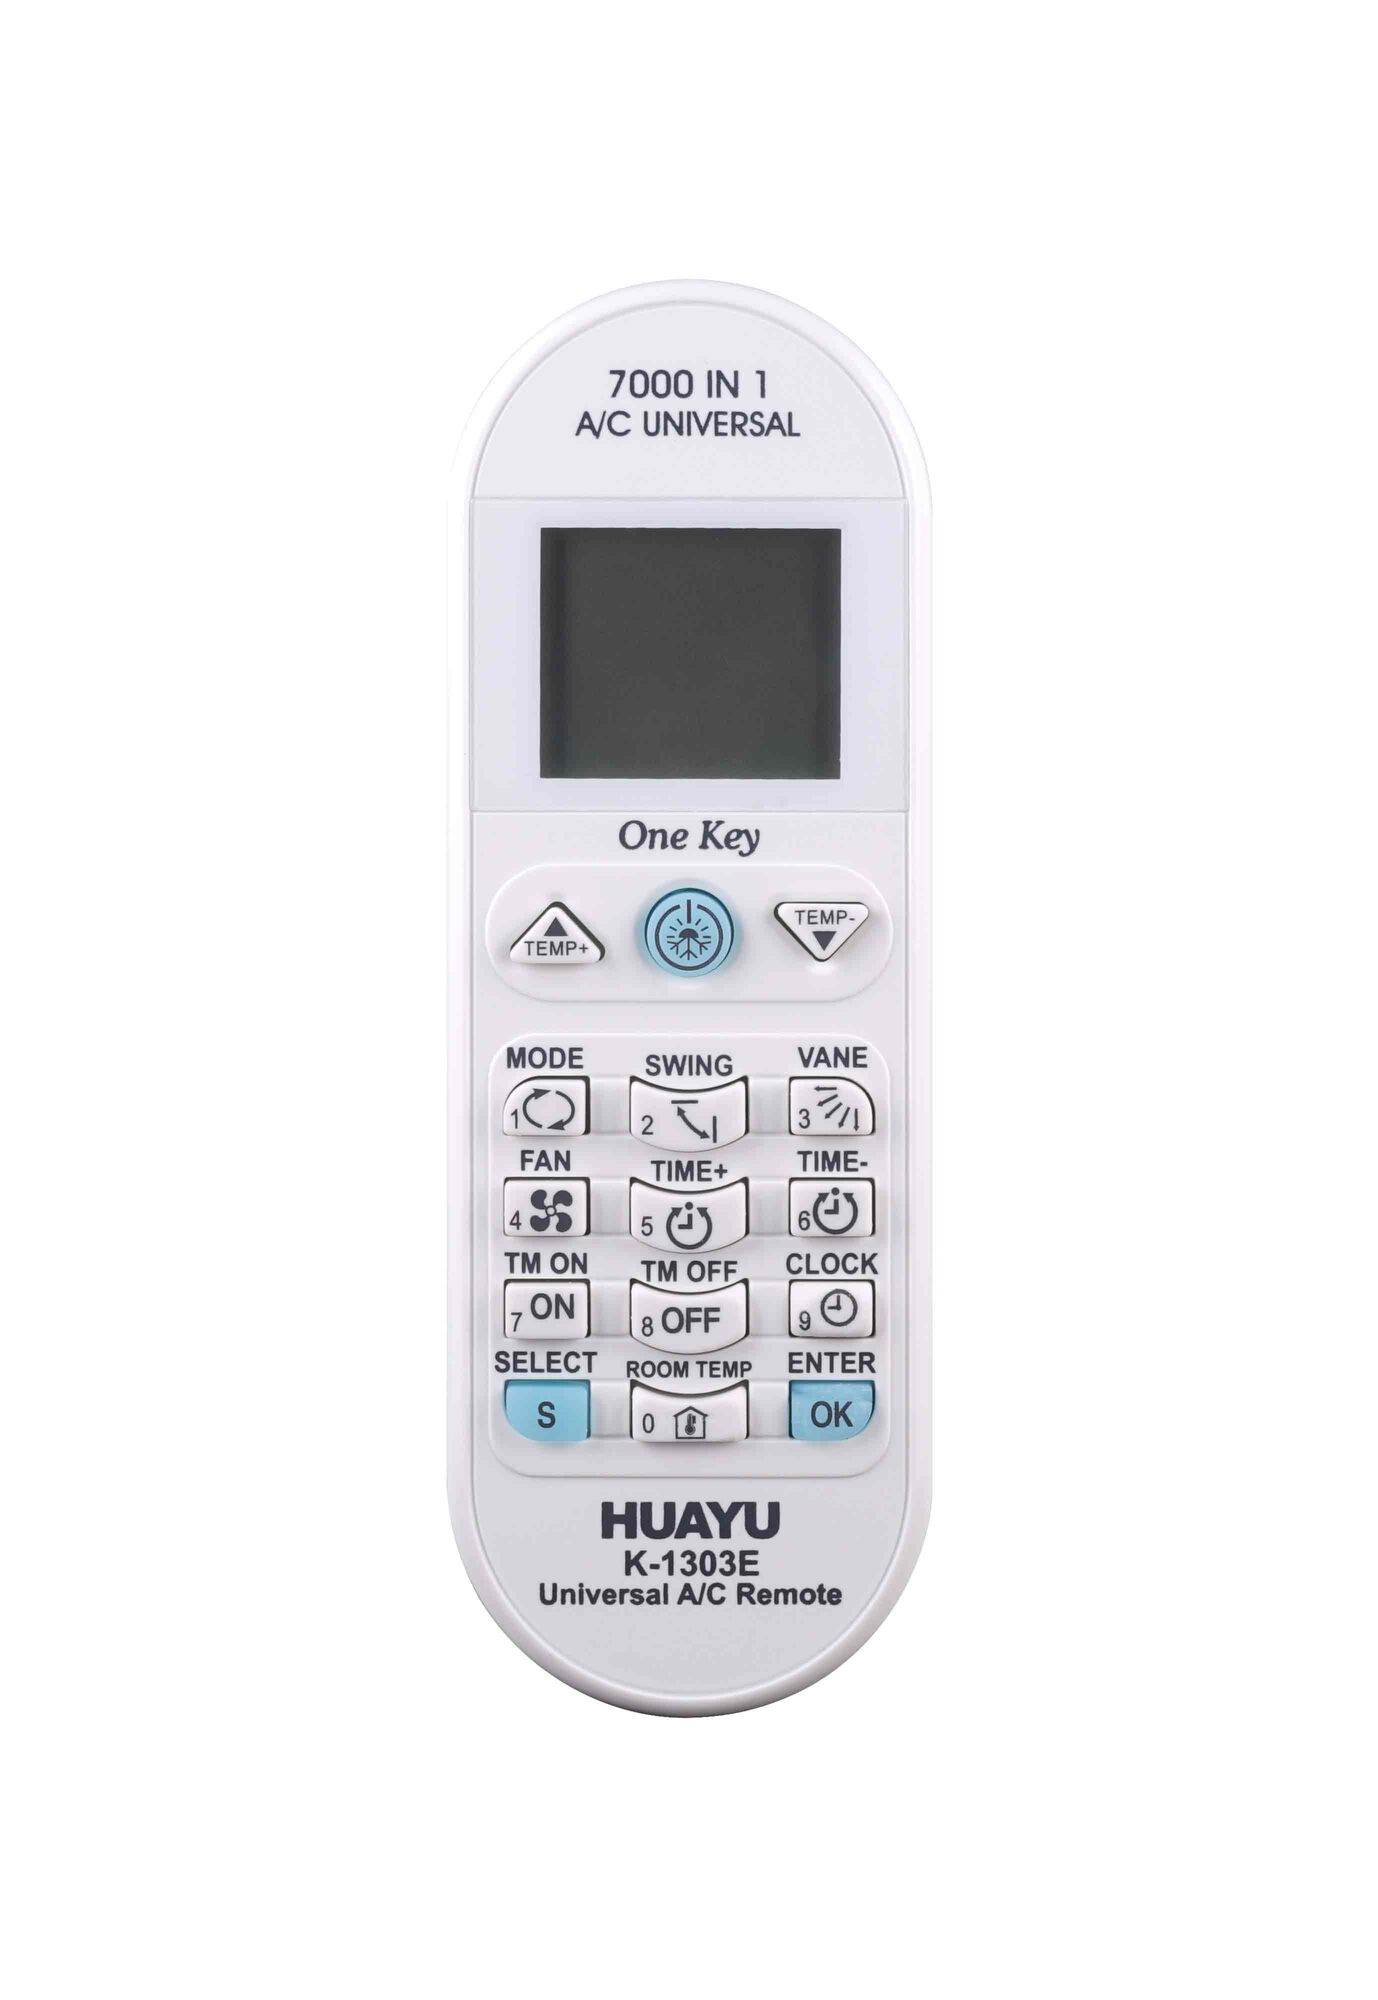 Пульт ДУ универсальный для кондиционеров HUAYU K-1303E 7000 в 1 (KT-E08) заменяет 99,9% моделей